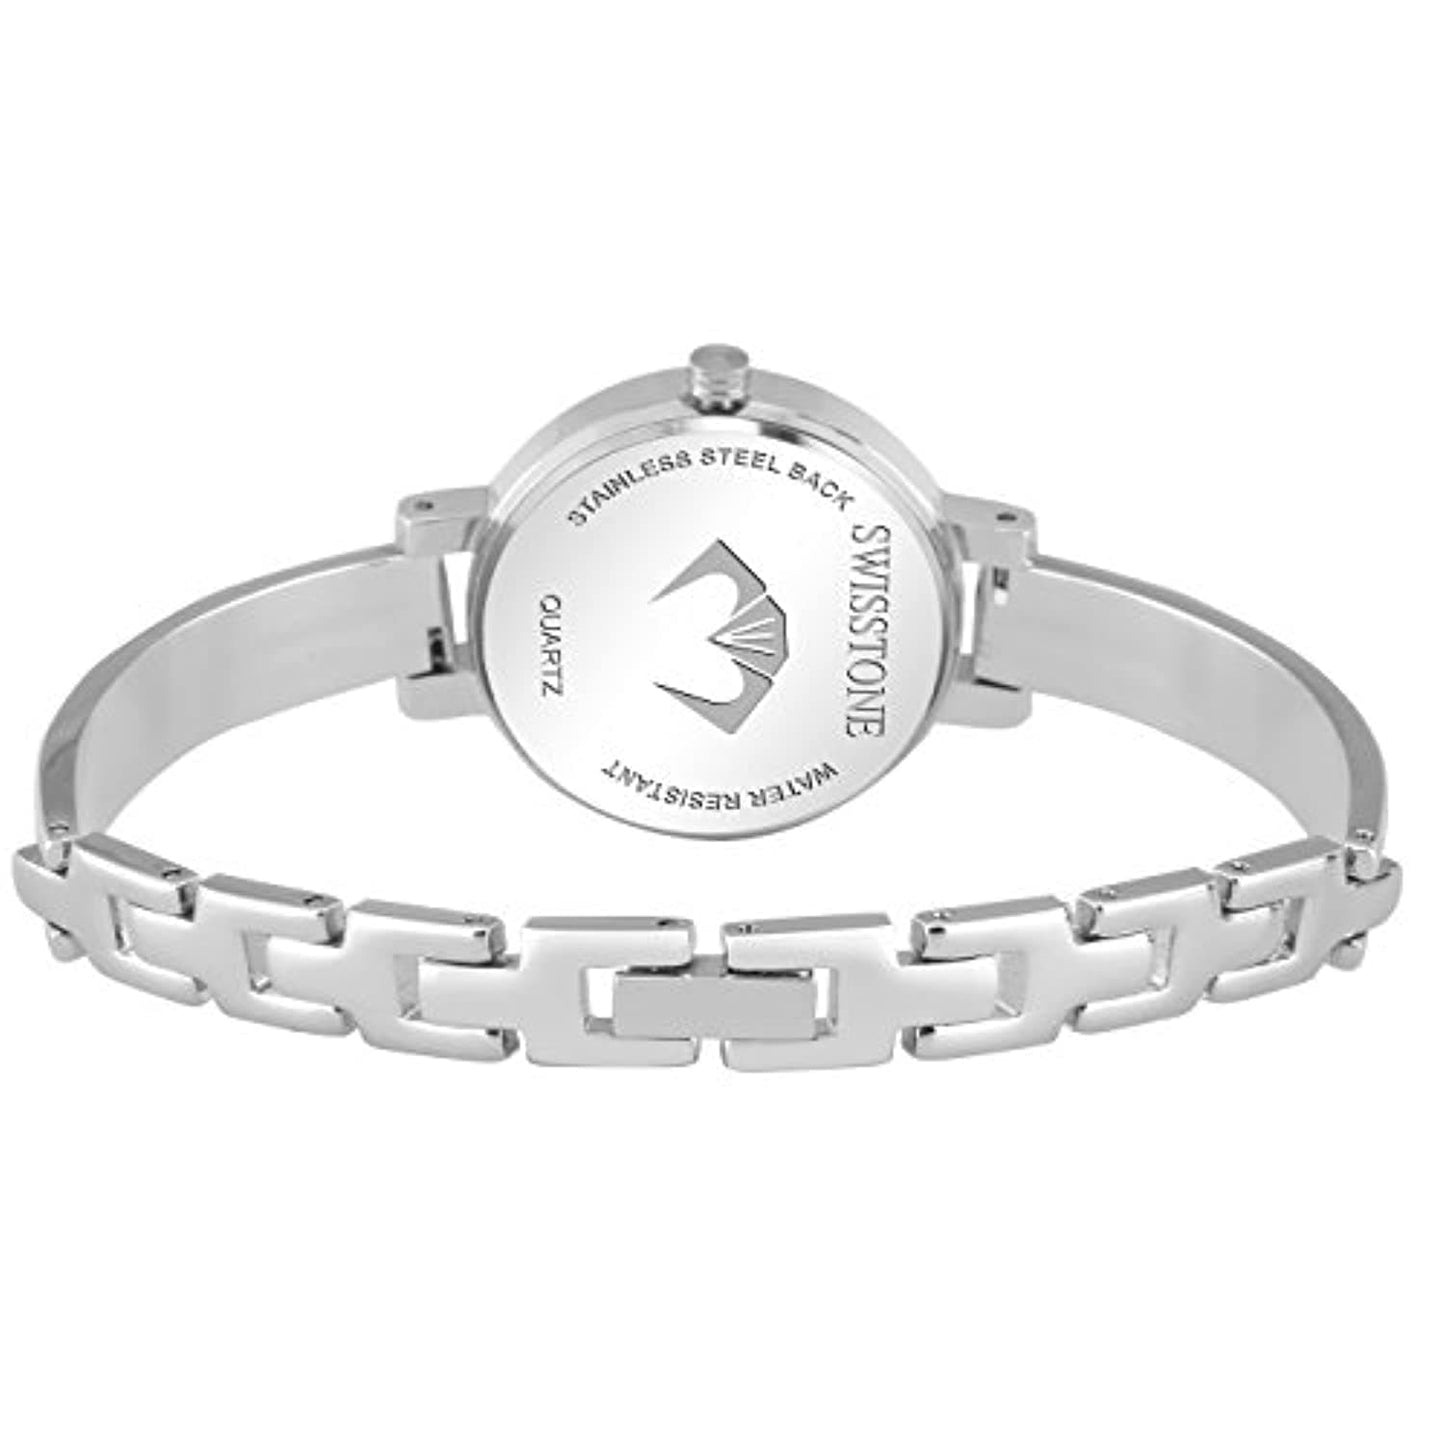 Silver Plated Bracelet Wrist Watch for Women